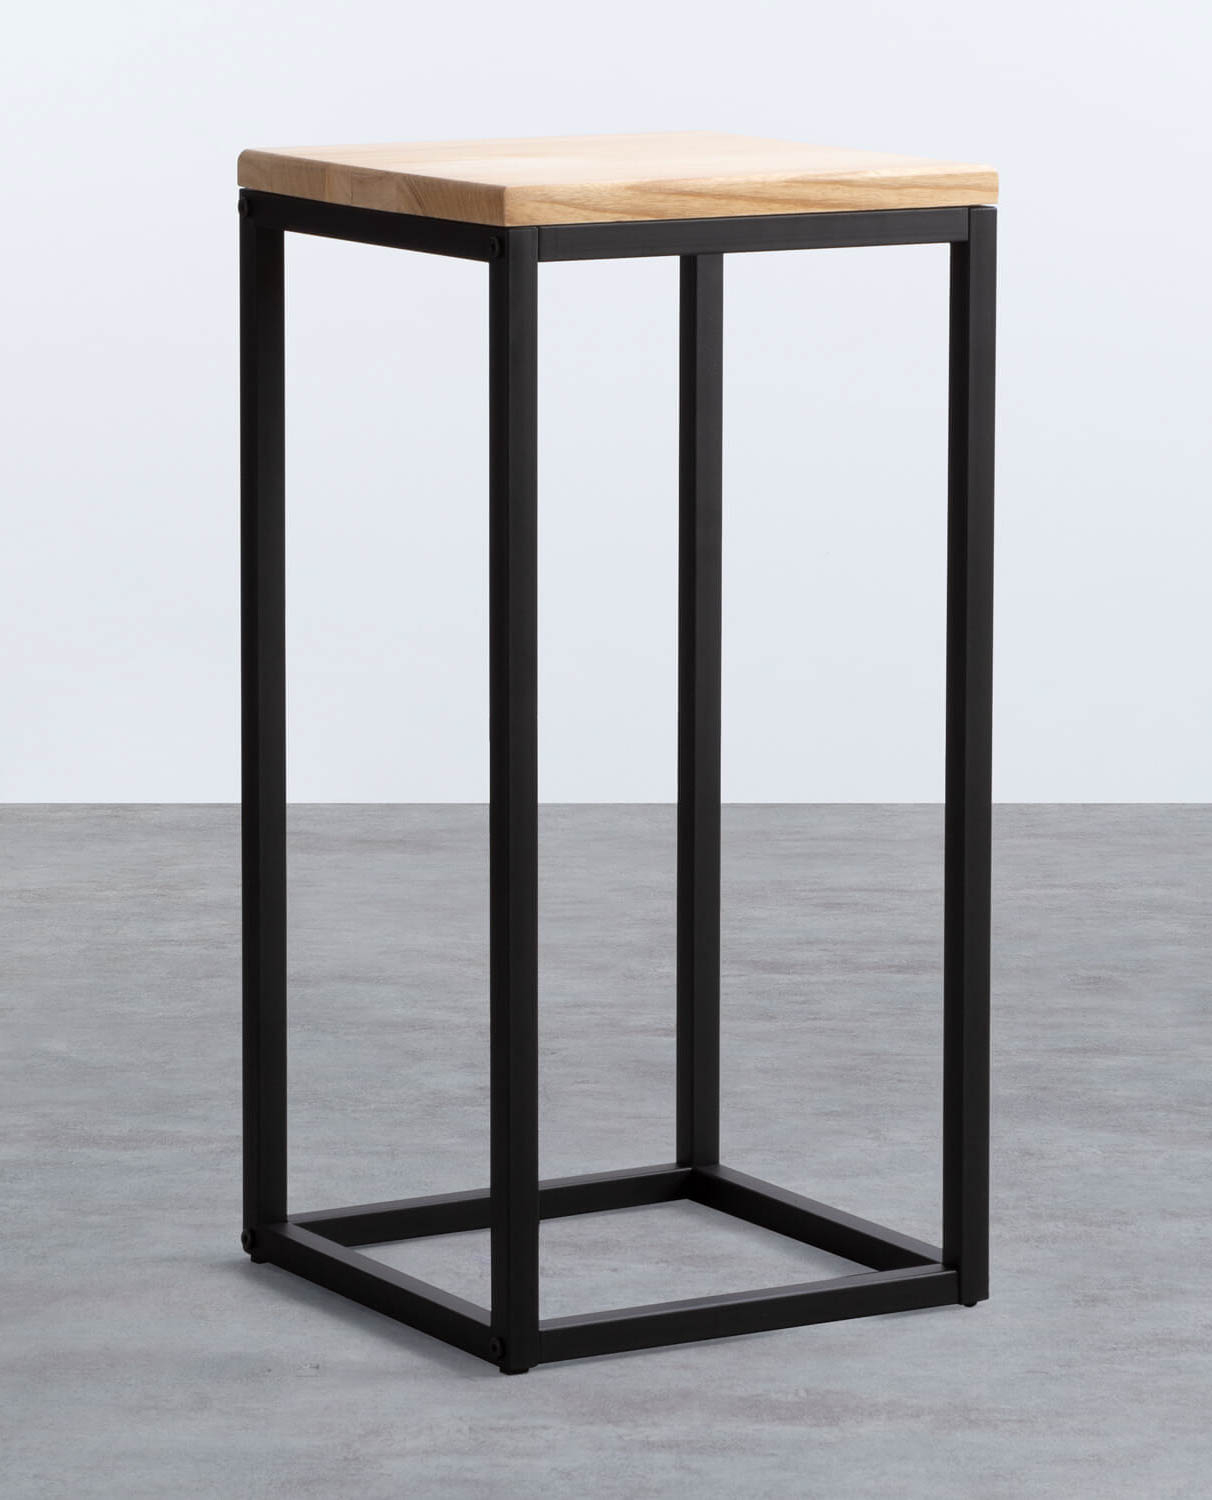 Tavolino Ausiliare Quadrato in Legno e Metallo (30 x 30 cm) Ferro Alto, immagine della galleria 1